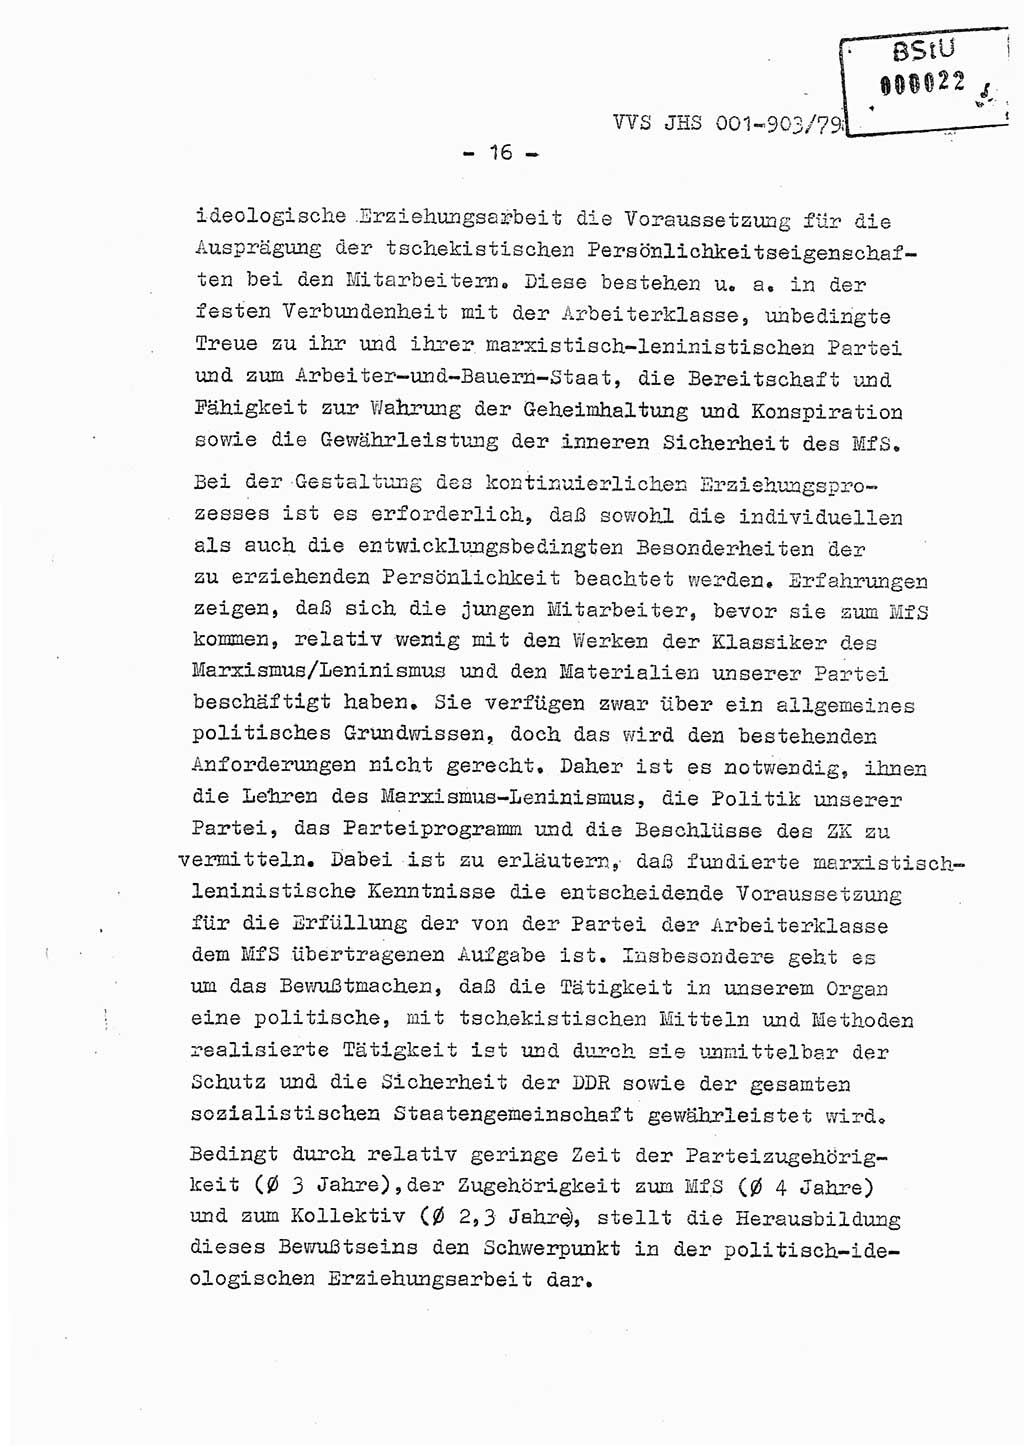 Fachschulabschlußarbeit Oberleutnant Jochen Pfeffer (HA Ⅸ/AGL), Ministerium für Staatssicherheit (MfS) [Deutsche Demokratische Republik (DDR)], Juristische Hochschule (JHS), Vertrauliche Verschlußsache (VVS) 001-903/79, Potsdam 1979, Seite 16 (FS-Abschl.-Arb. MfS DDR JHS VVS 001-903/79 1979, S. 16)